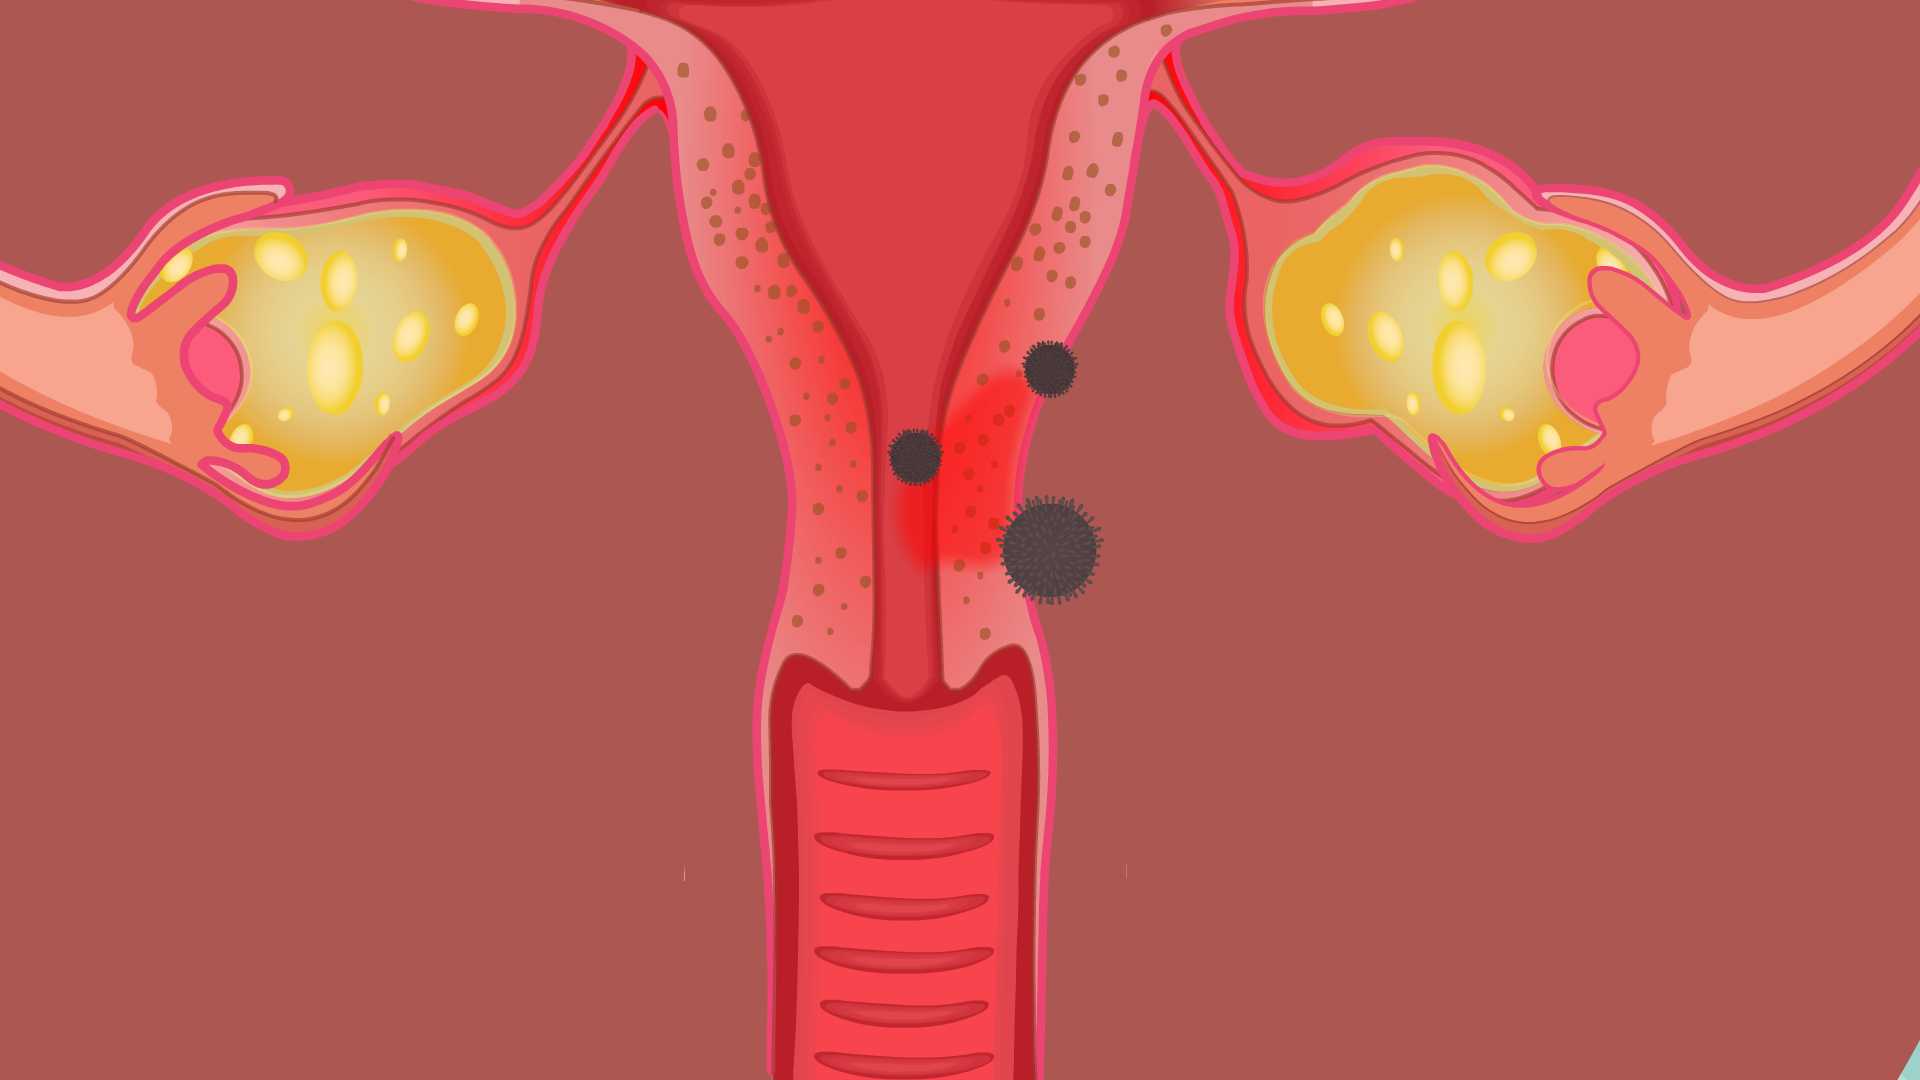 宫颈炎是一种常见的妇科疾病